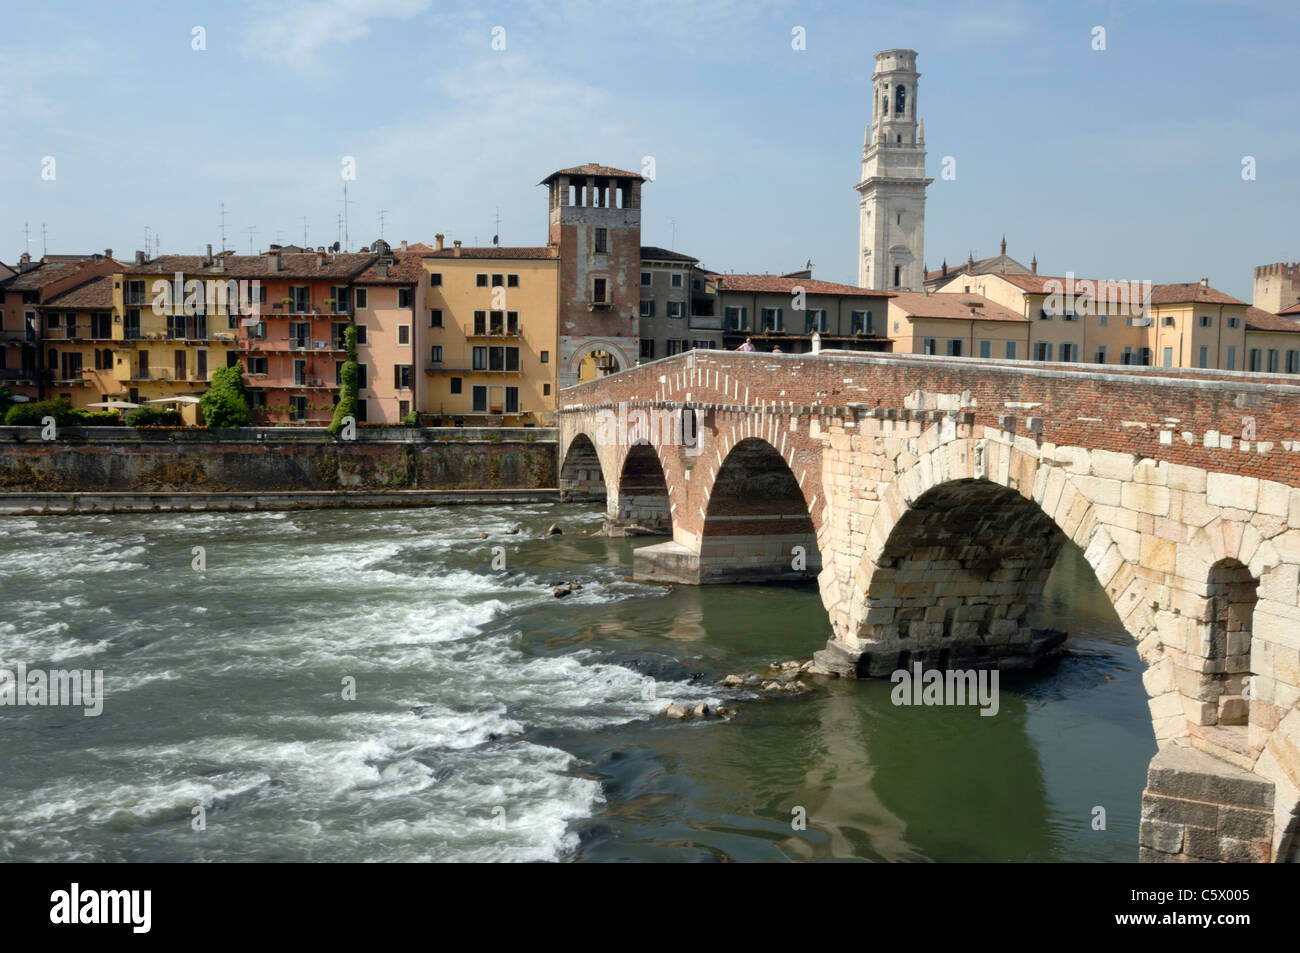 El campanario del Duomo y del Ponte Pietra en el Fiume Adige en Verona Foto de stock